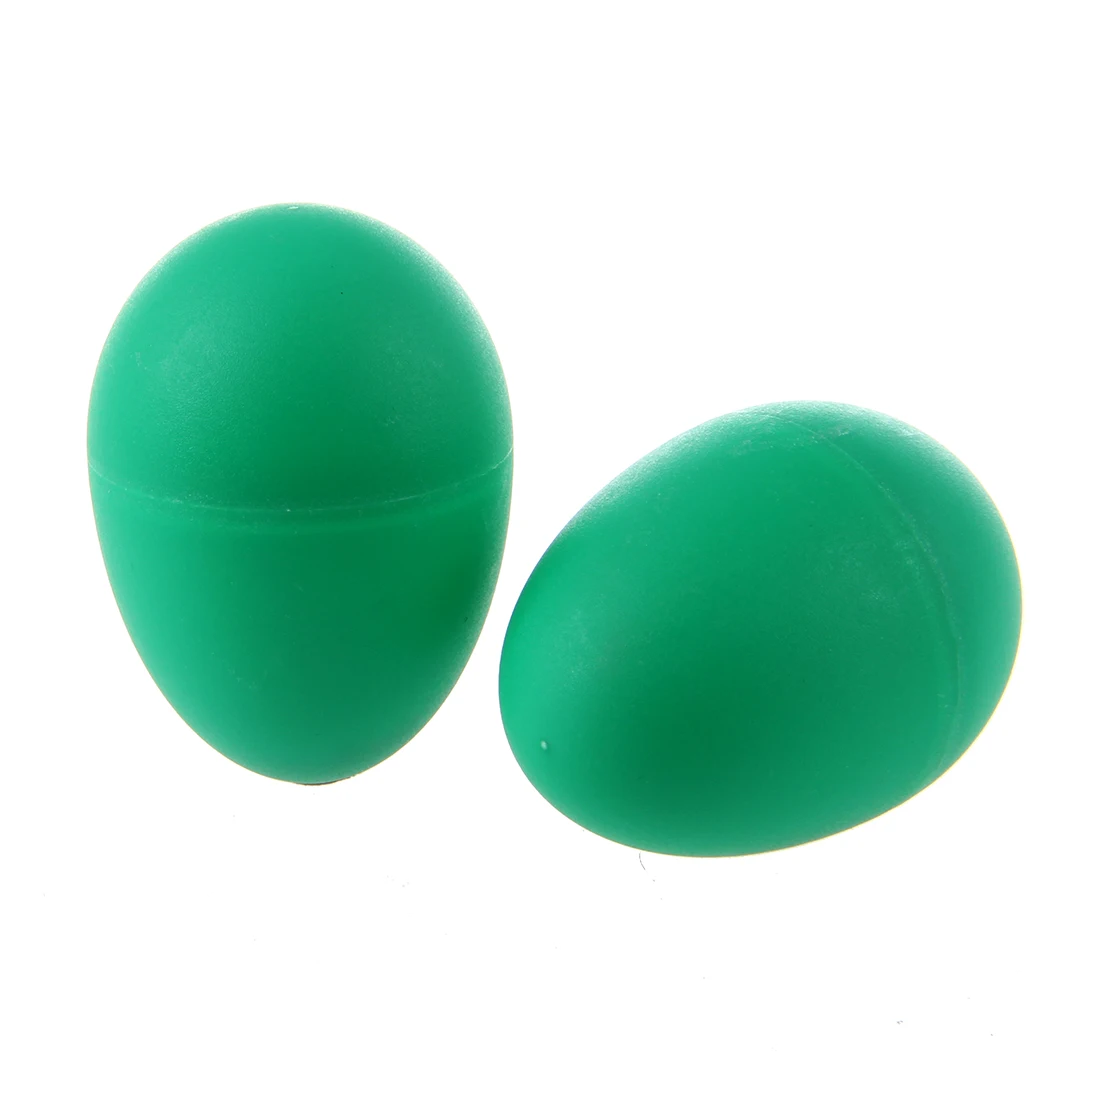 2 пластиковые зеленые яйца Марака погремушки шейкер ударные Детские музыкальные игрушки